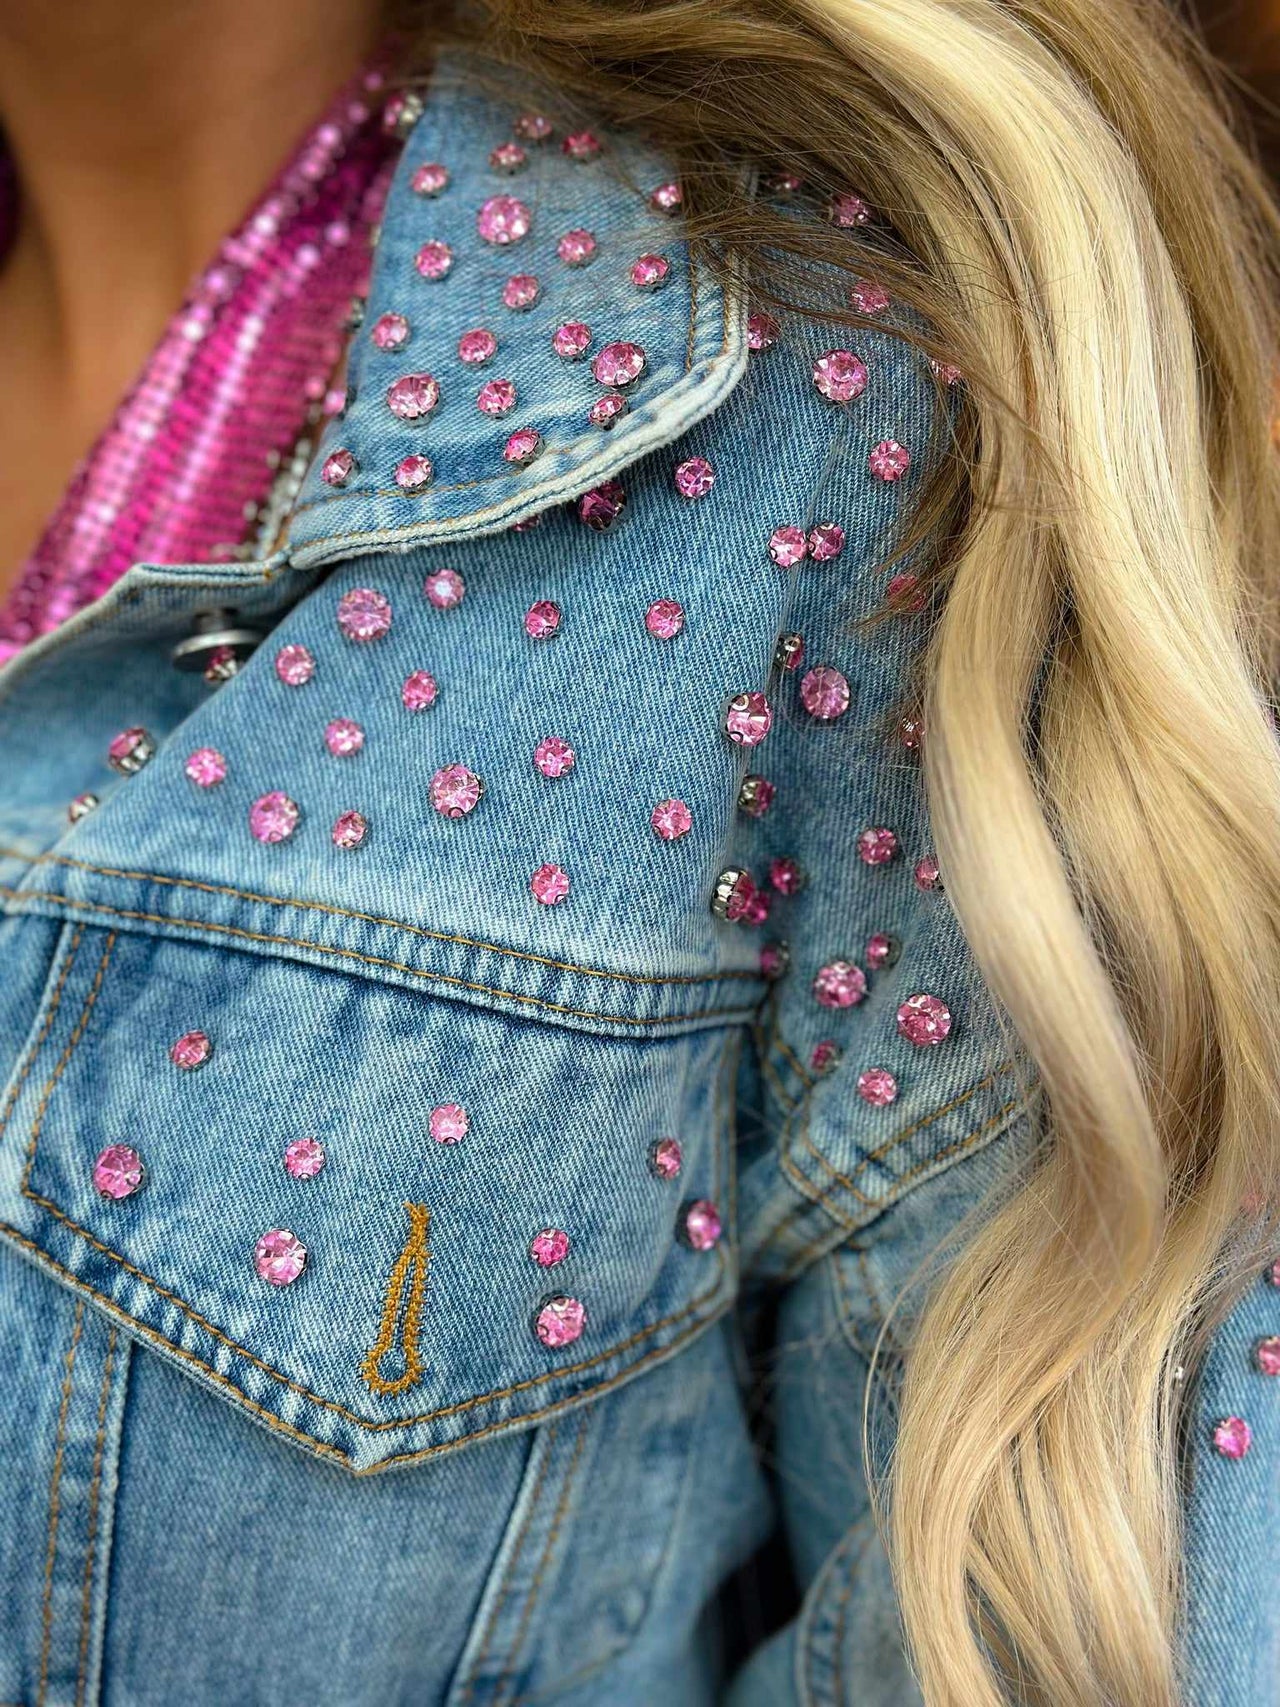 Pink gem studded jean jacket for women.